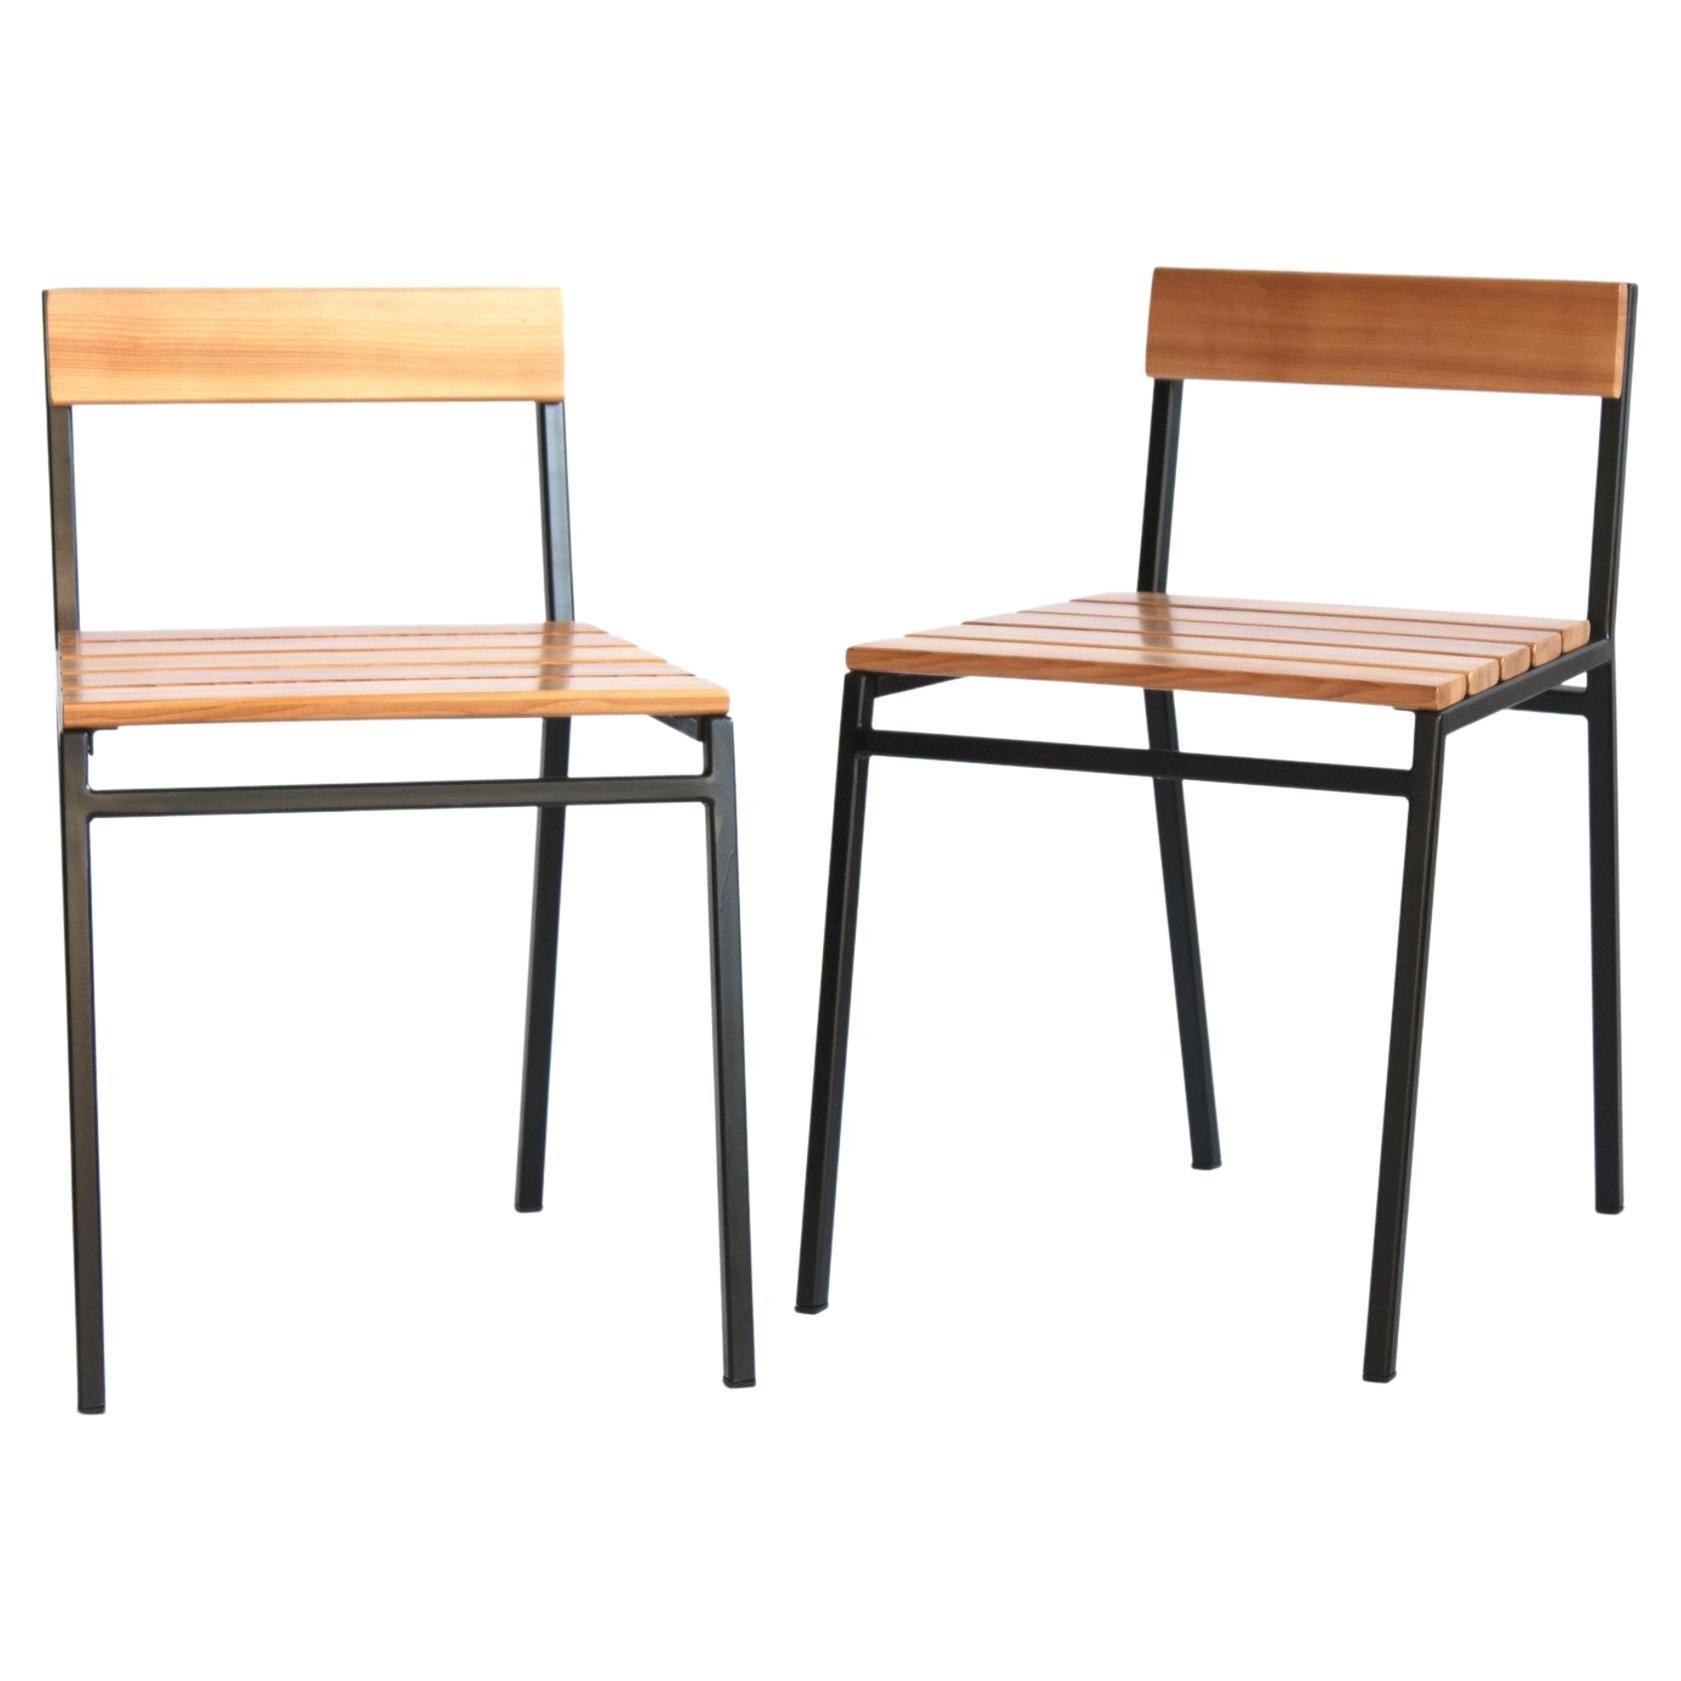 Slaat Dining Chair in Cedar and Steel, Indoor/Outdoor Design by Kln Studio